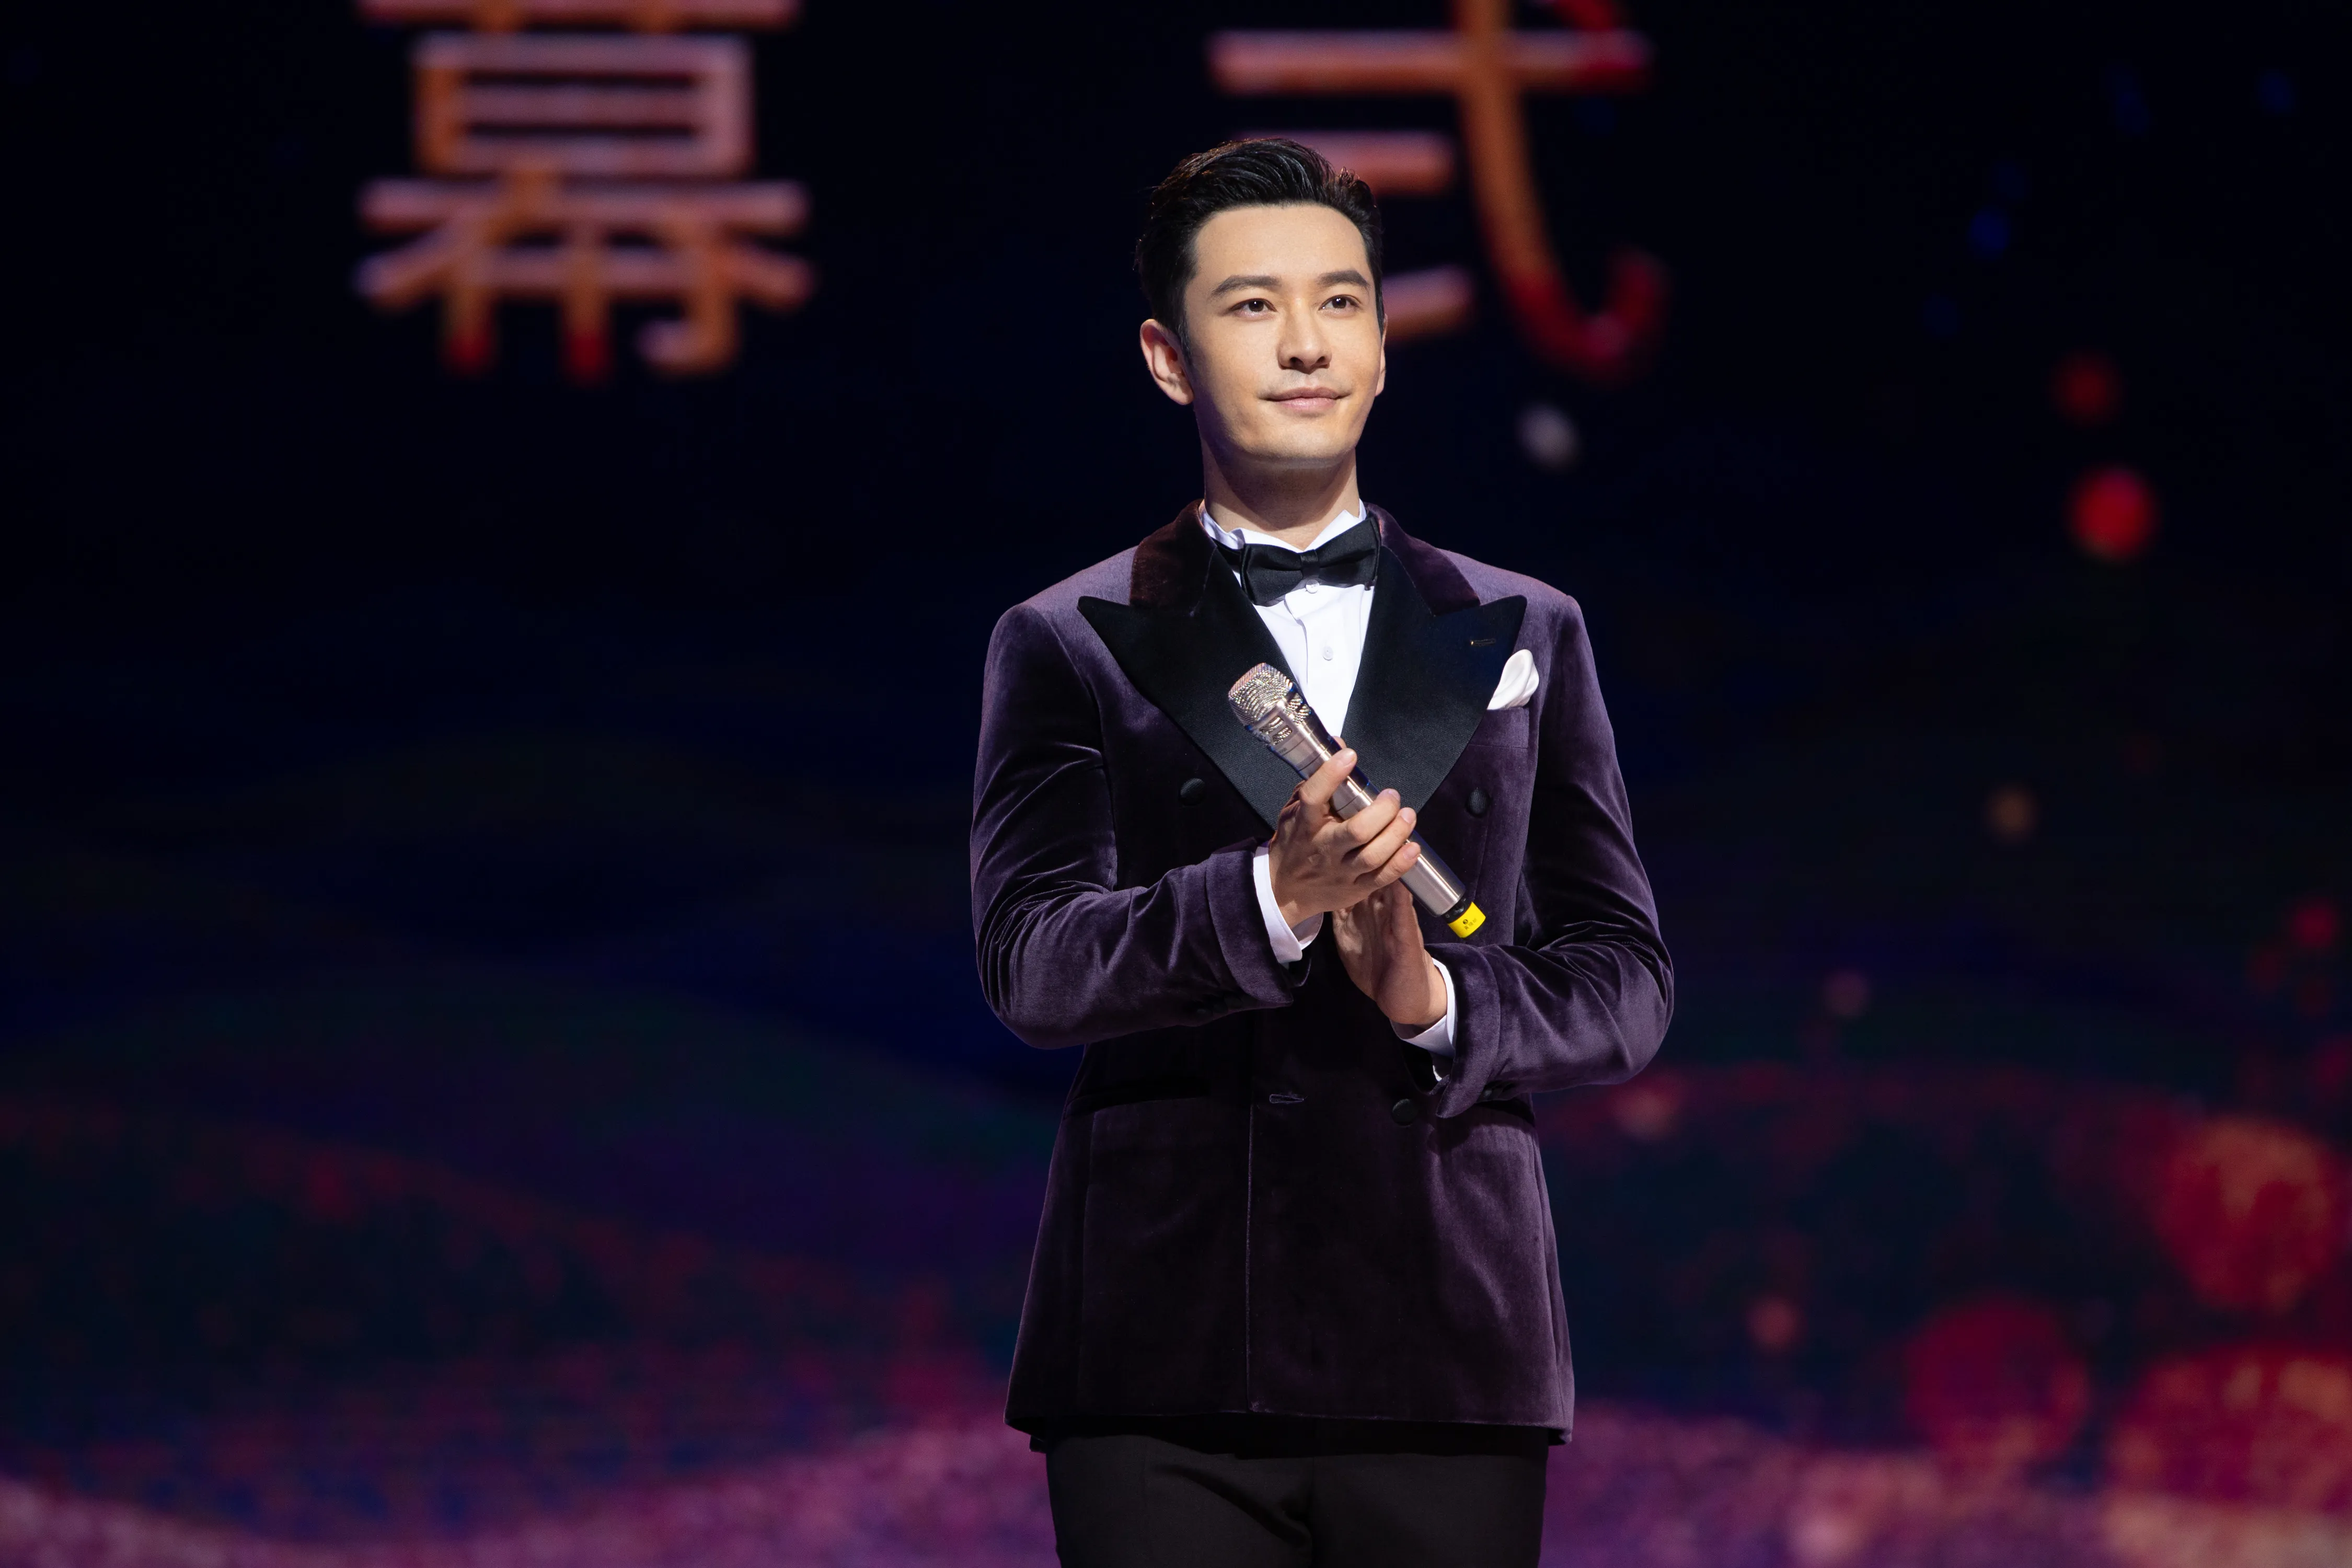  Xiaoming Huang 一身丝绒西装造型亮相第28届中国金鸡百花电影节开幕式.jpg